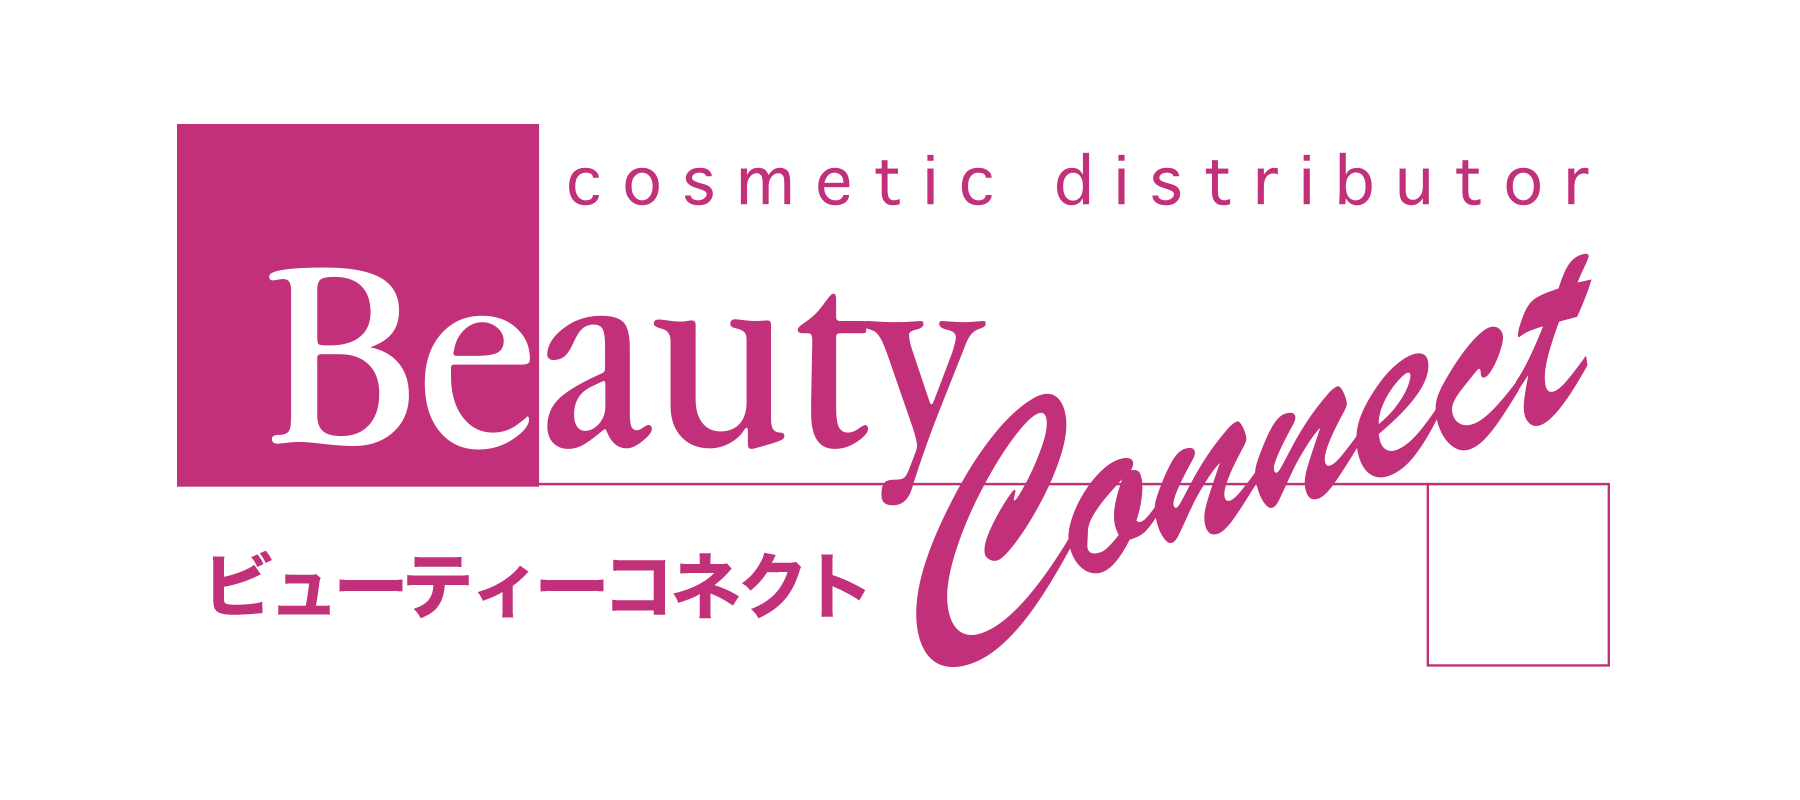 Beauty-Net